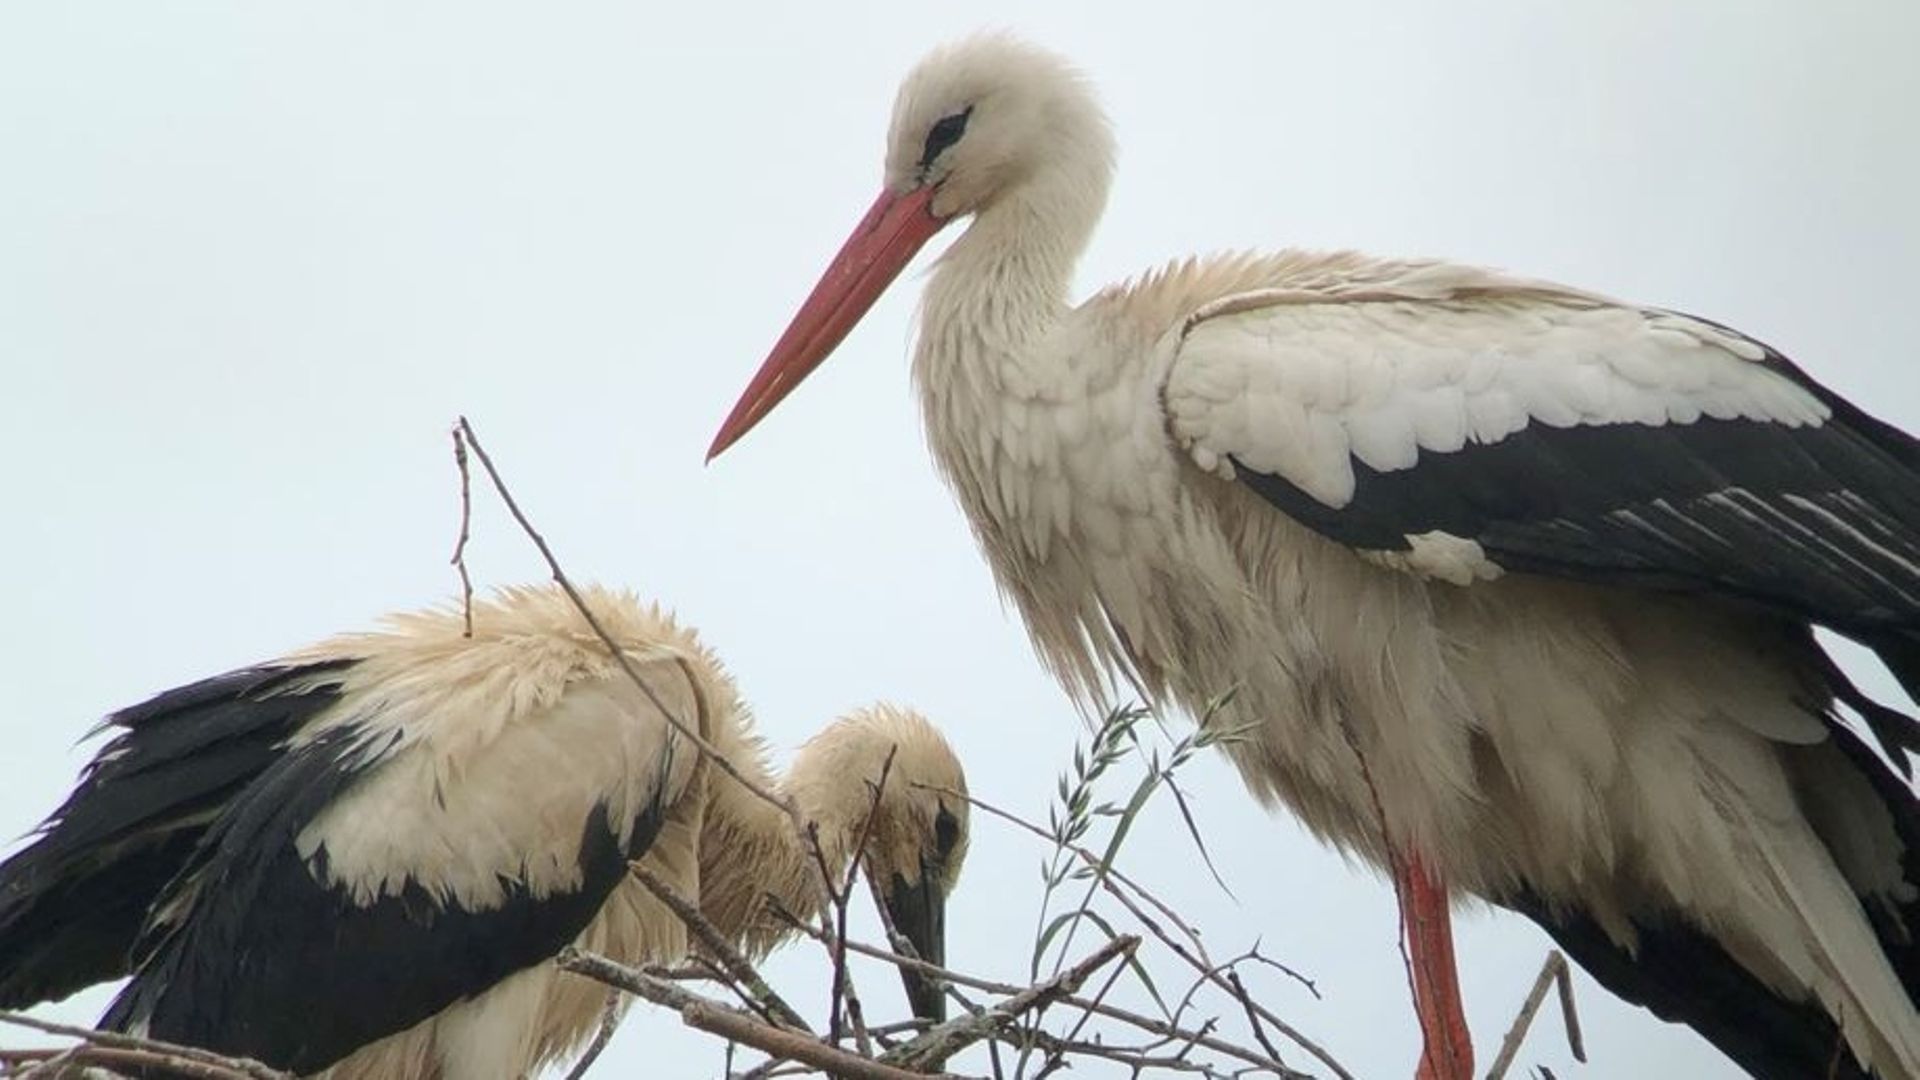 Braconnage d'oiseaux recherchés : un piège à la glu découvert à Vilvoorde 